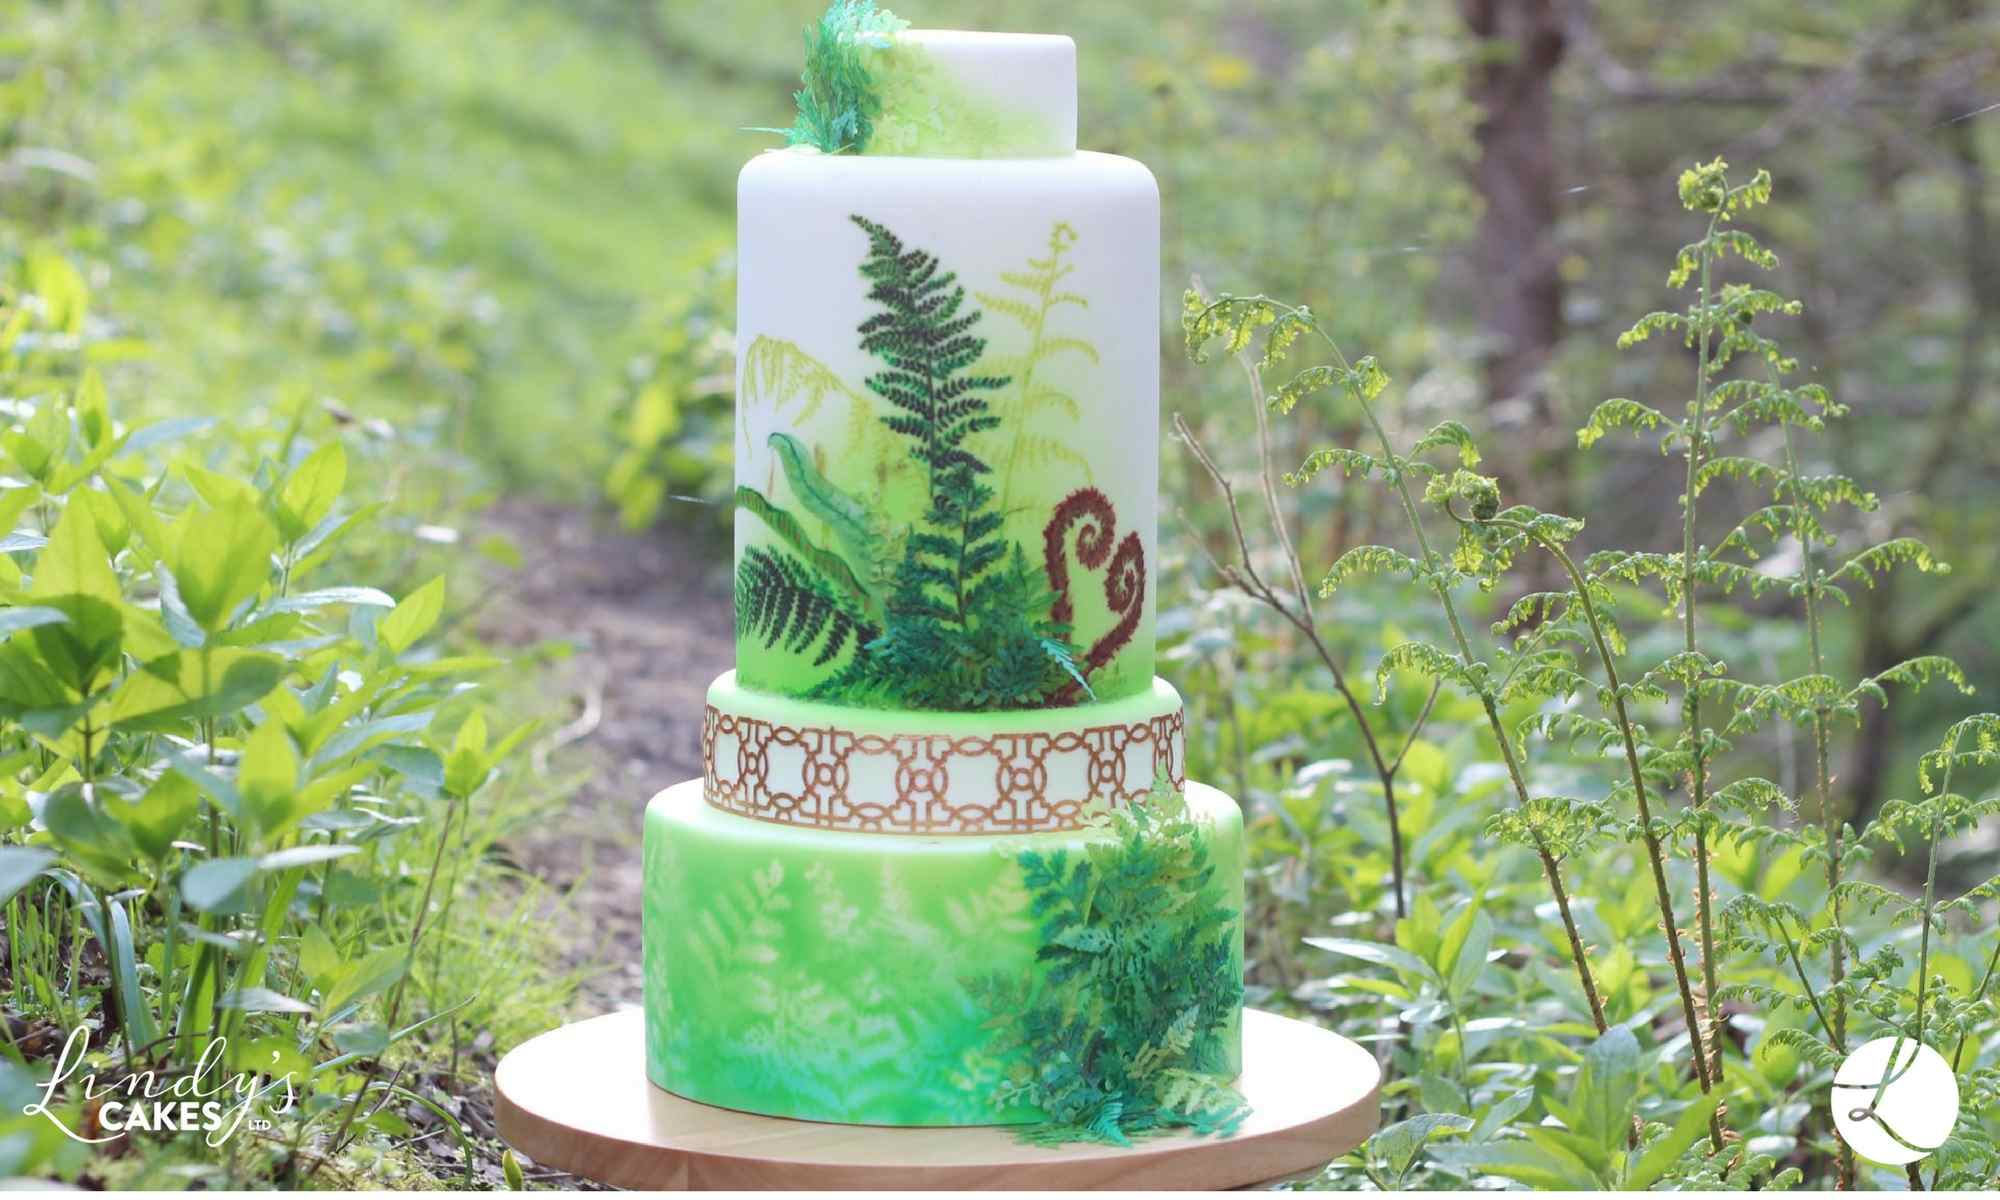 Botanical fern inspired stacked celebration cake by award winning cake designer Lindy Smith